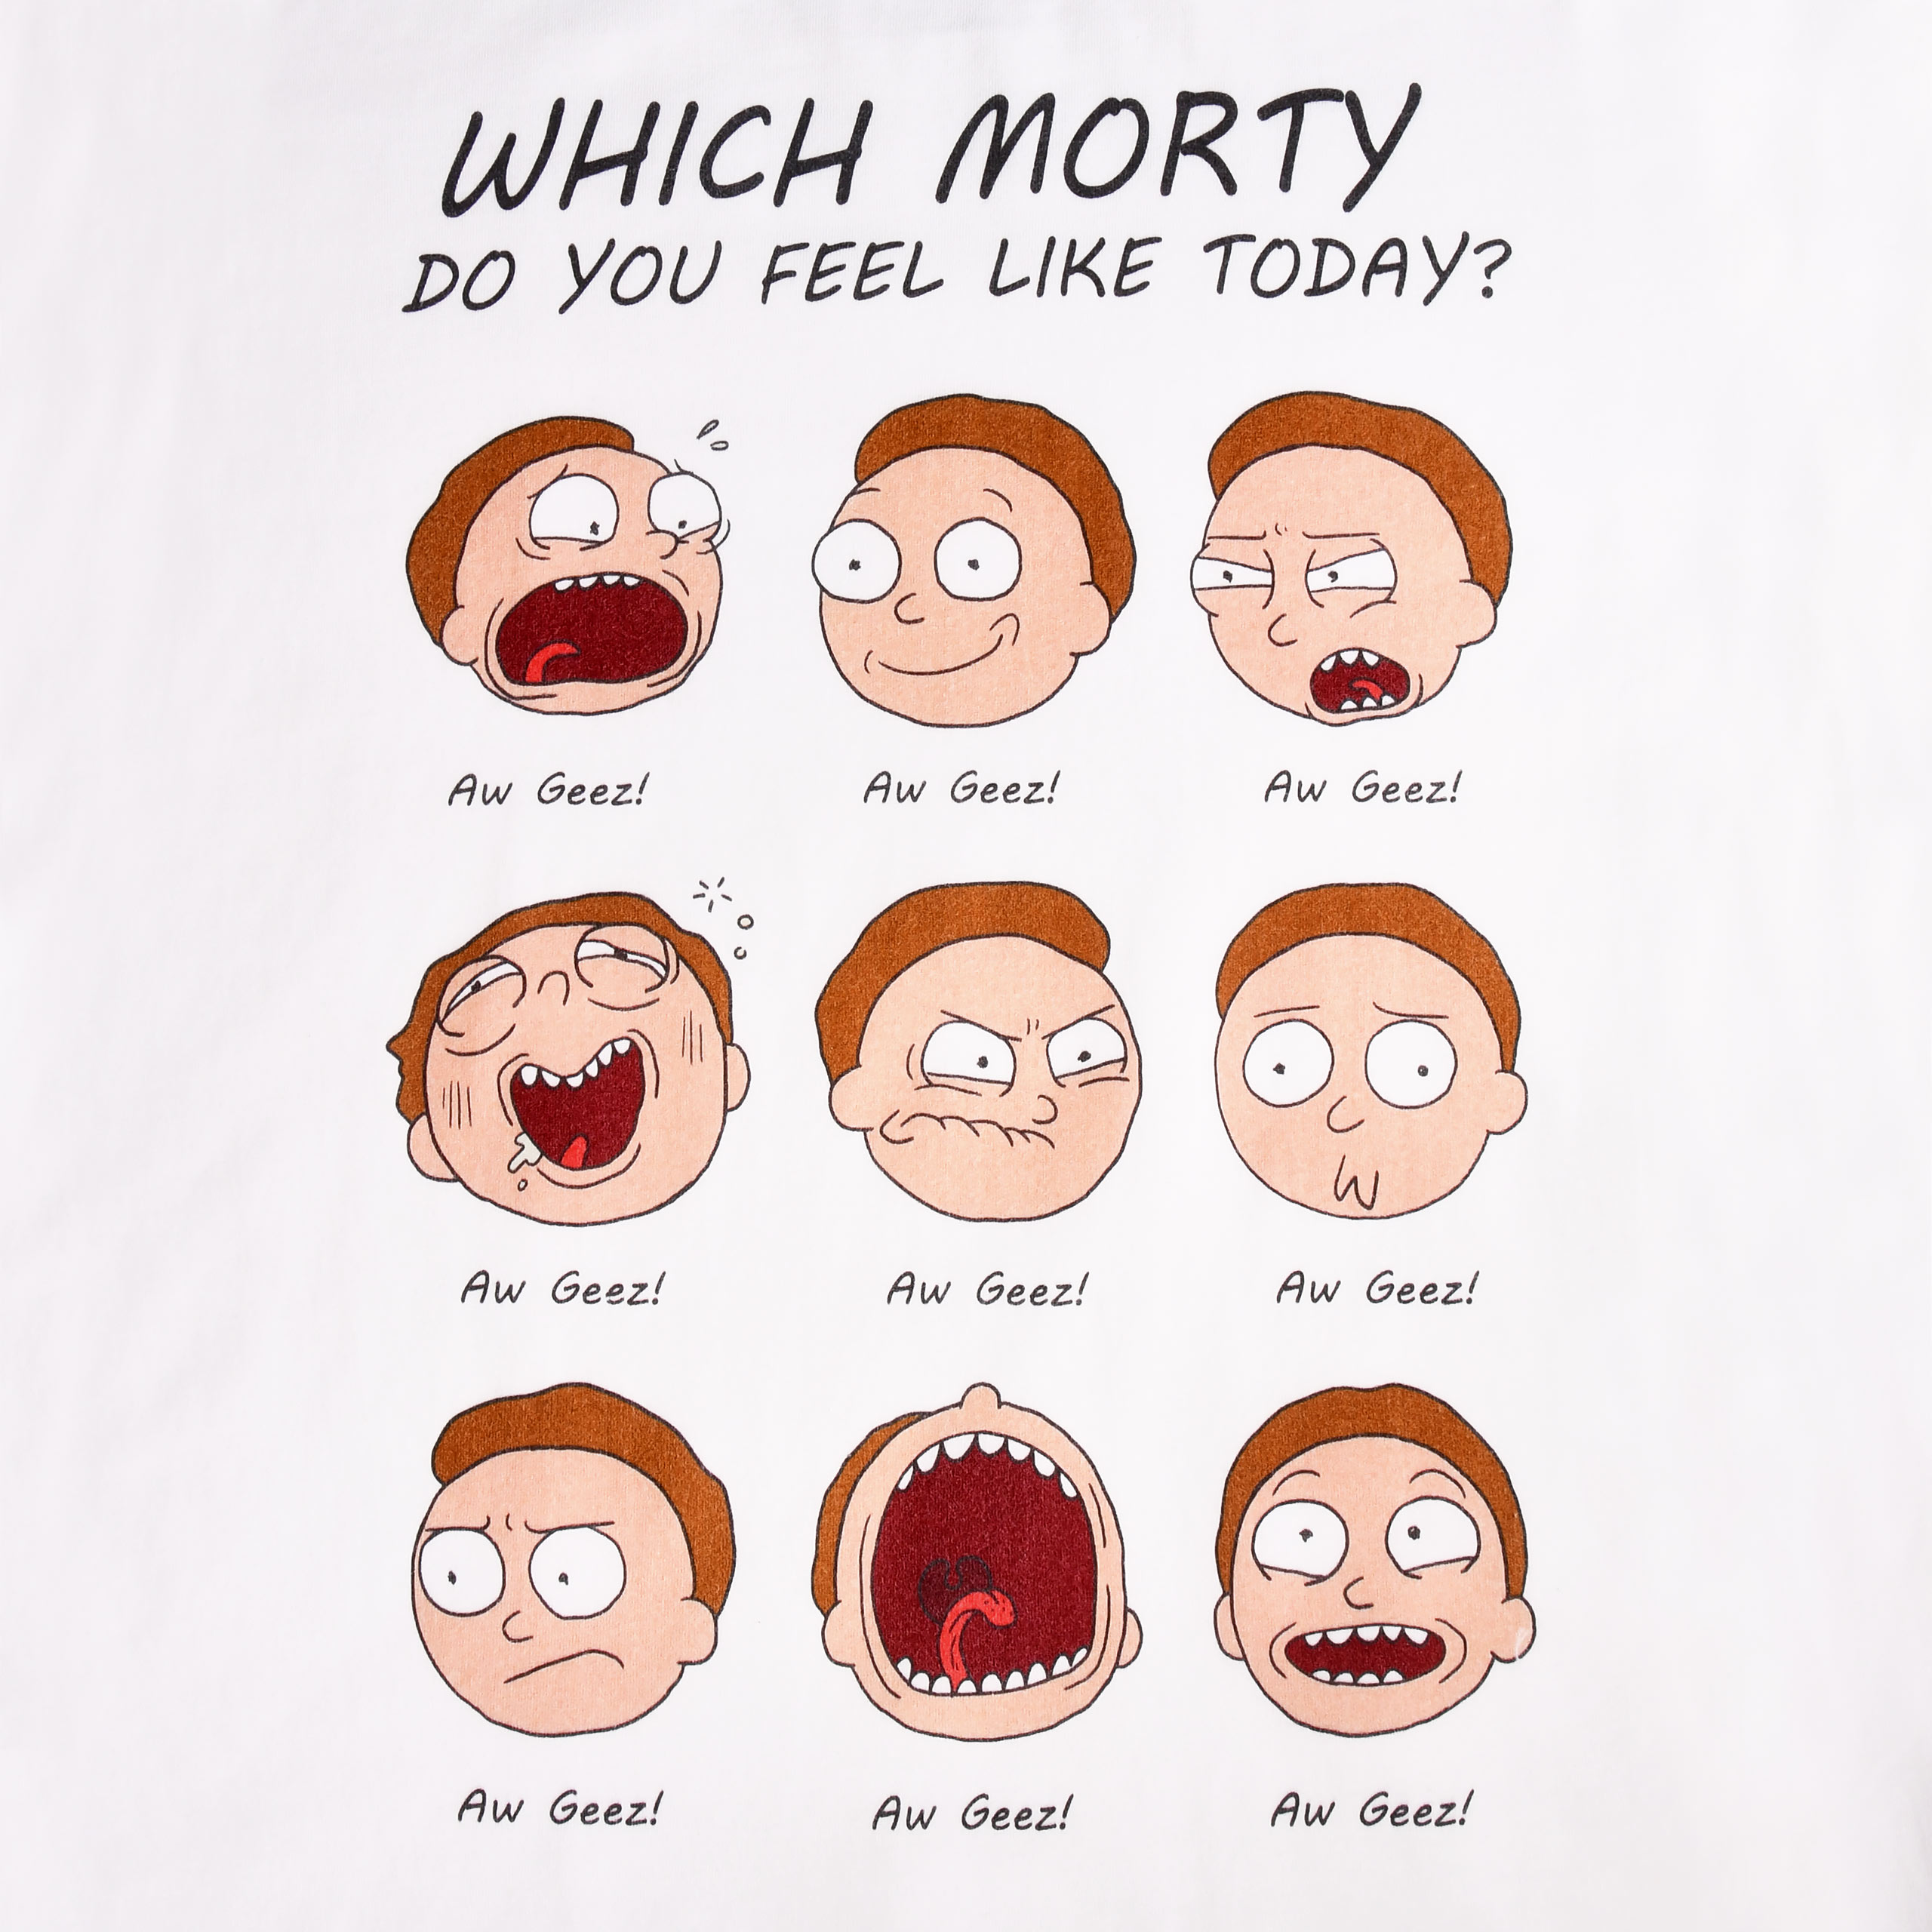 Rick et Morty - Émotion de Morty T-shirt blanc